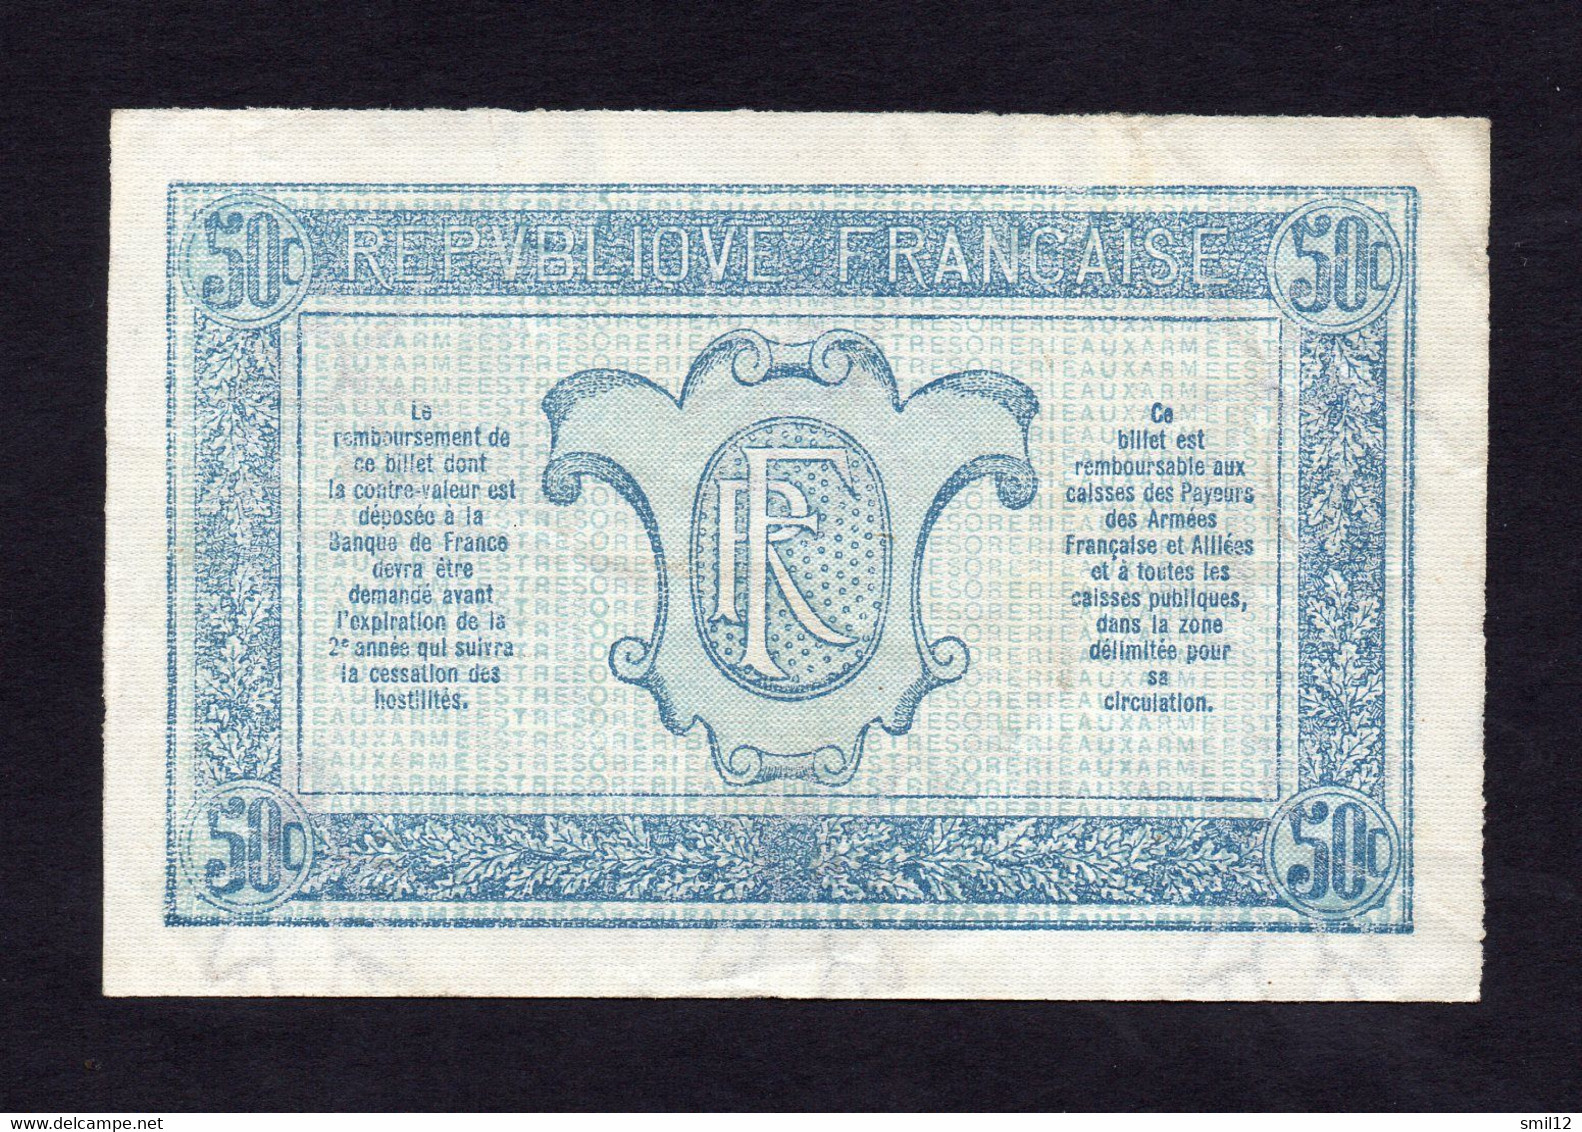 Trésorerie Aux Armées - 50 Centimes - Lettre E - Sup++ - 1917-1919 Army Treasury